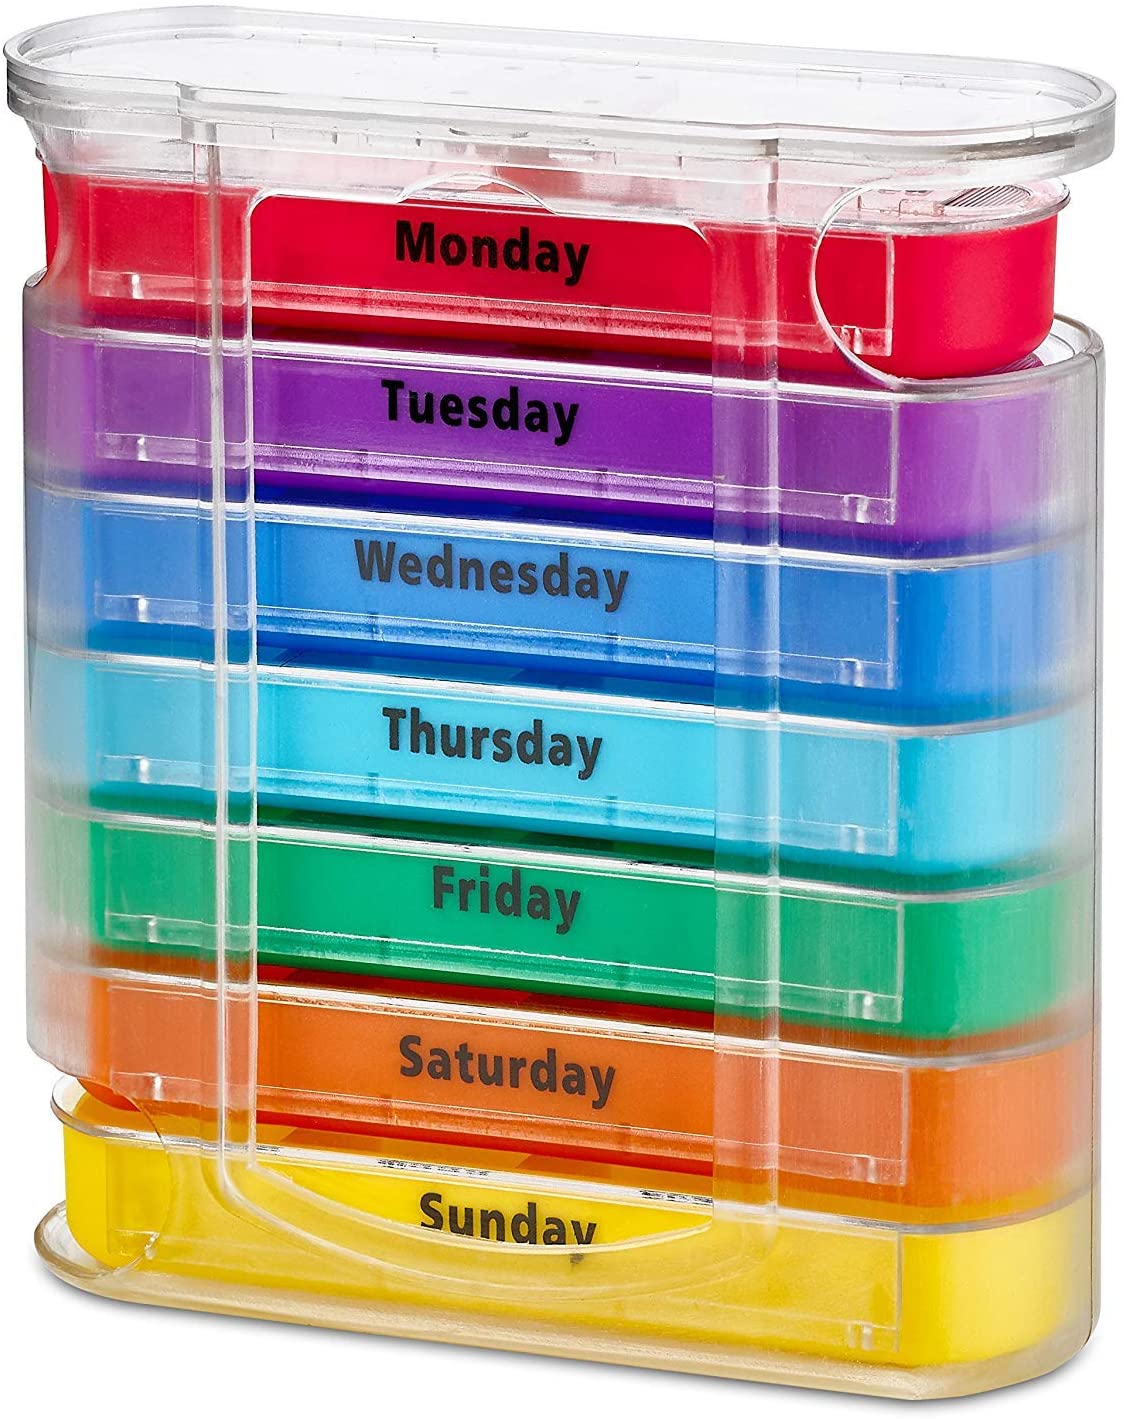 Colorido dispensador semanal de pastillas cuatro veces al día con compartimentos apilables